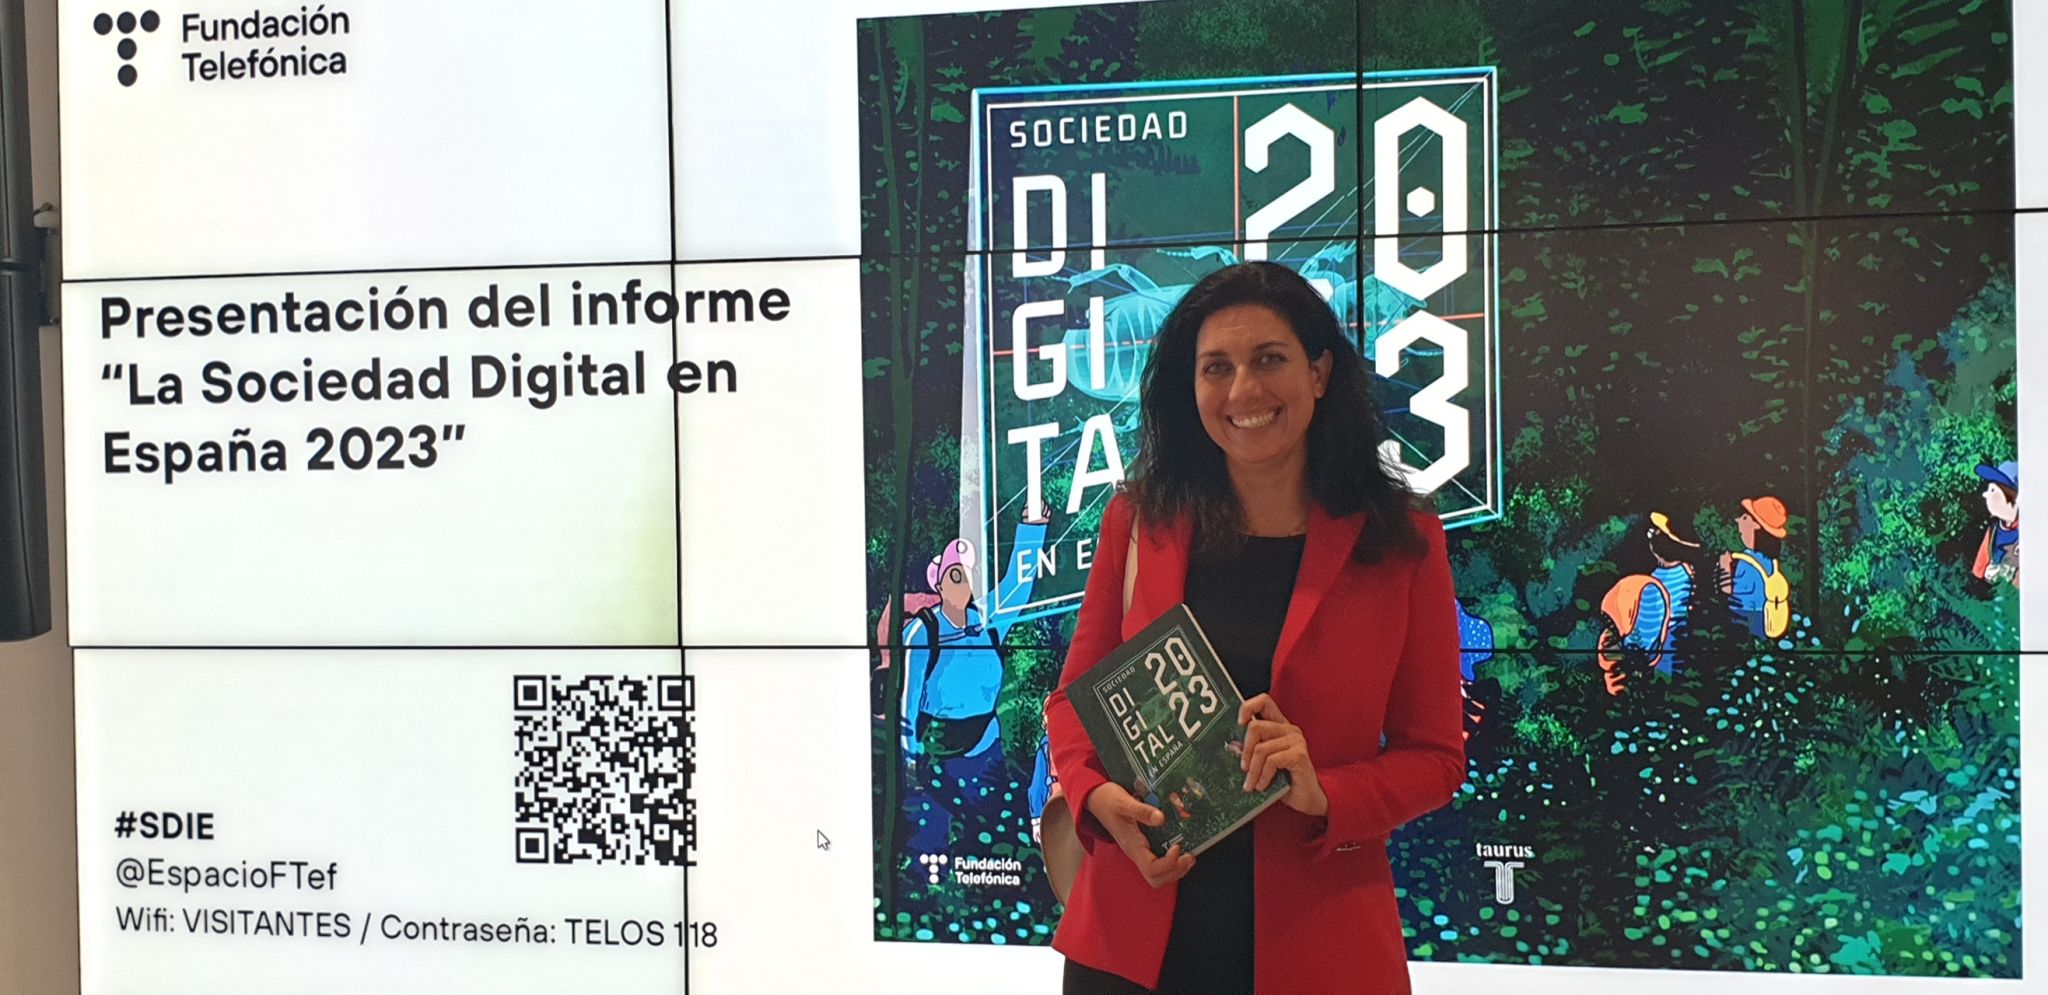 Almudena at Sociedad digital en Espana 2023 event